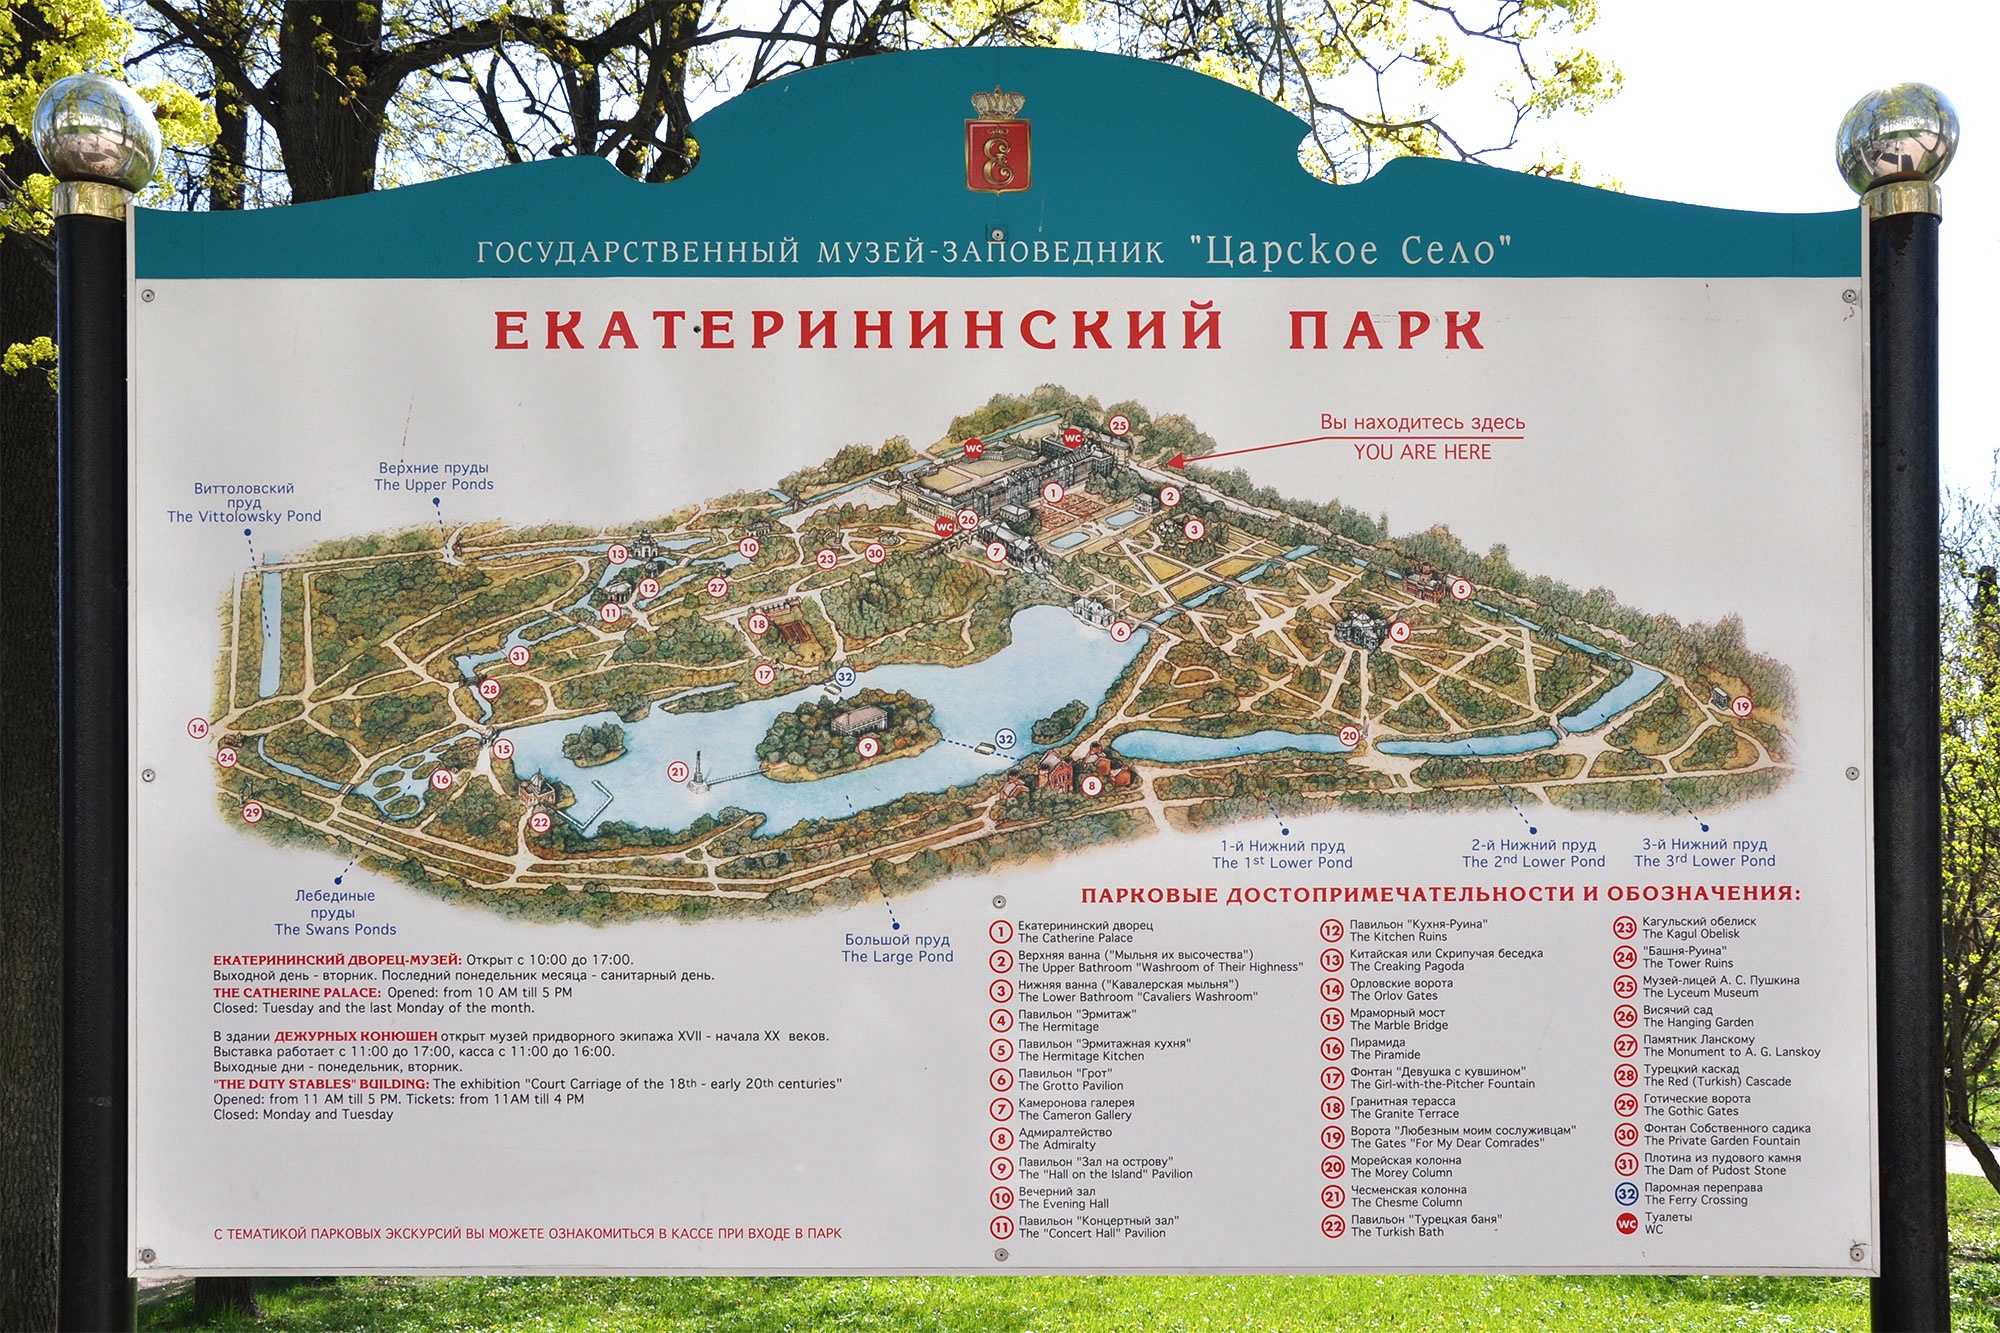 Большой пруд в екатерининском парке, царское село (пушкин, санкт-петербург)